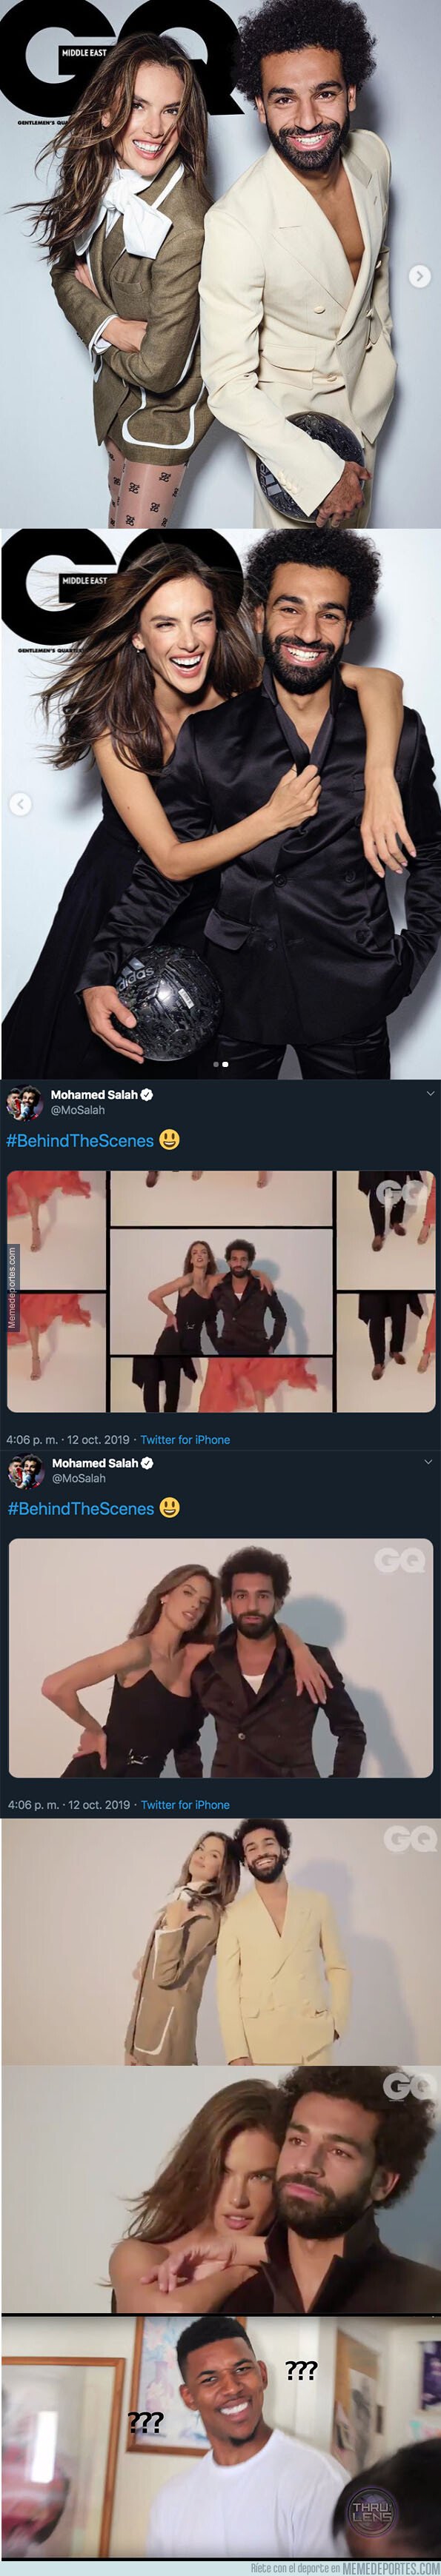 1089022 - Las fotos de Mohamed Salah con Alessandra Ambrosio que han indignado a muchísima gente de Egipto